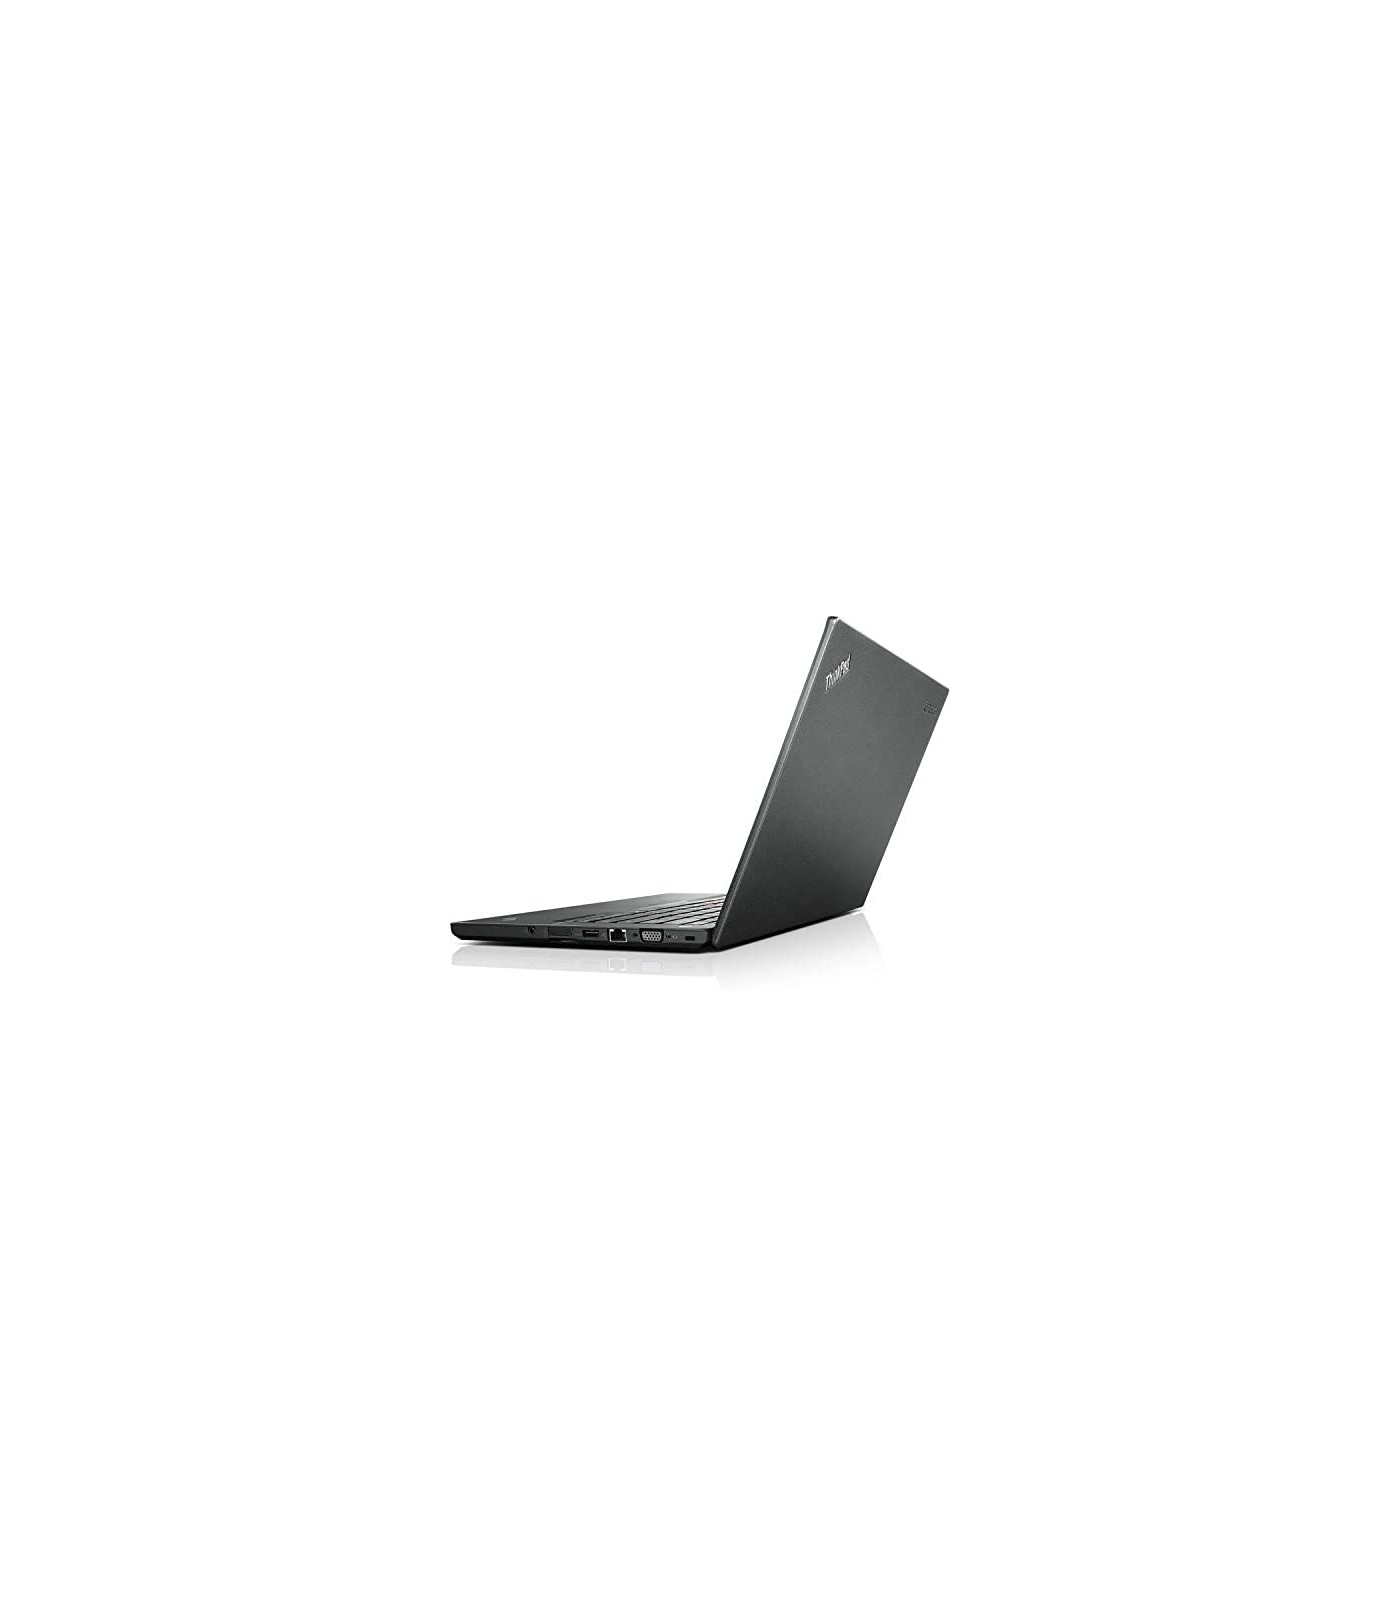 Poleasingowy laptop Lenovo ThinkPad T440S z Intel Core i5-4300U w Klasie A-